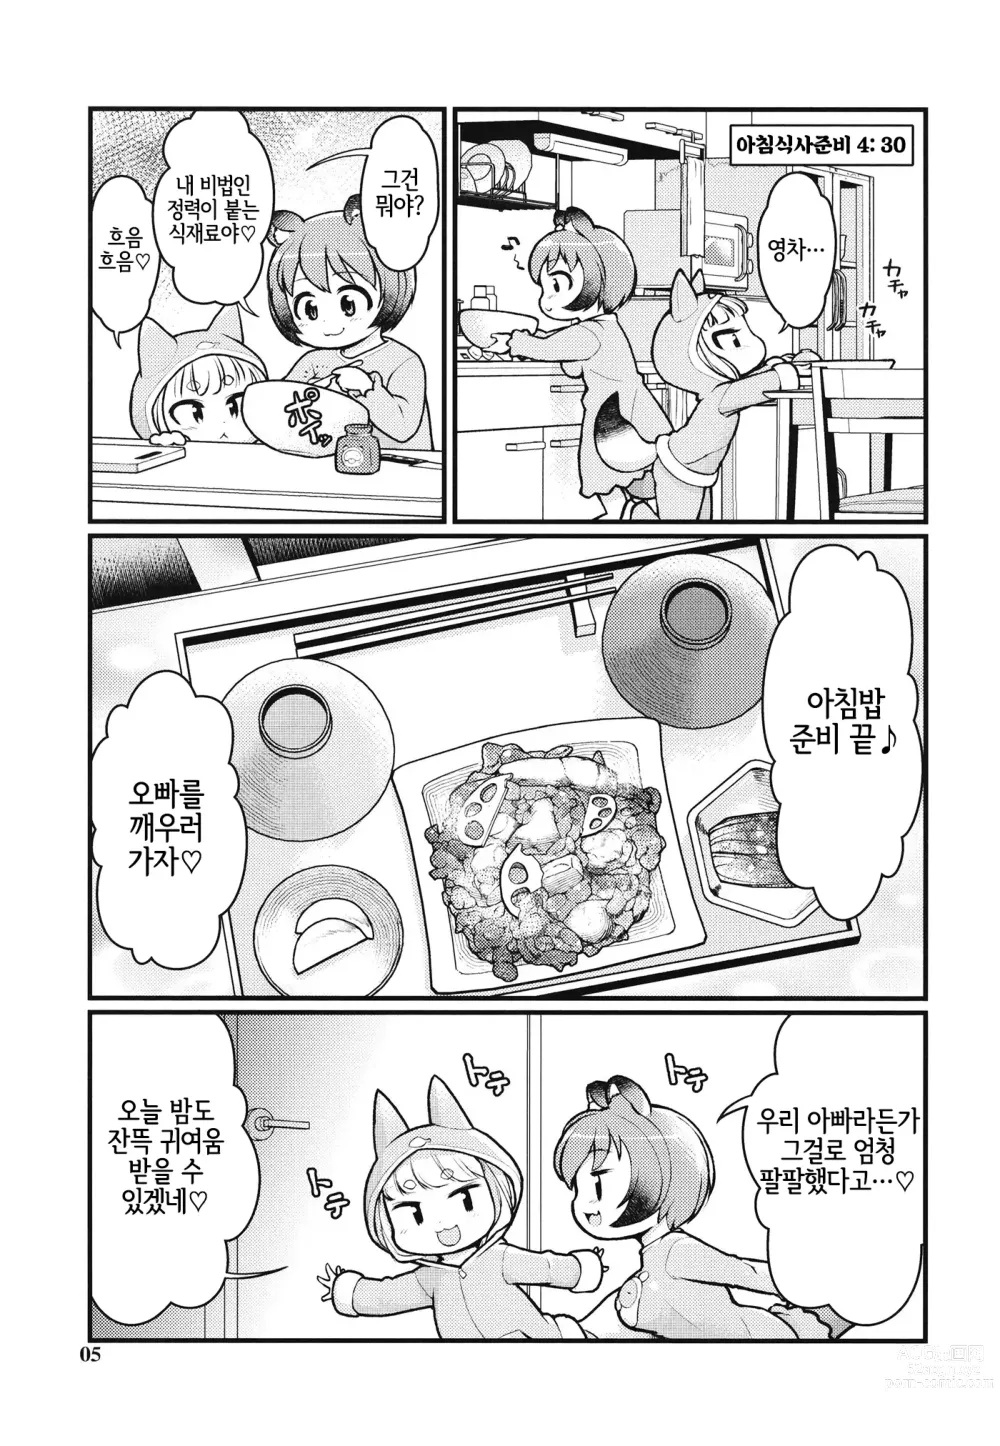 Page 4 of doujinshi 케모미미 아침 일상 2